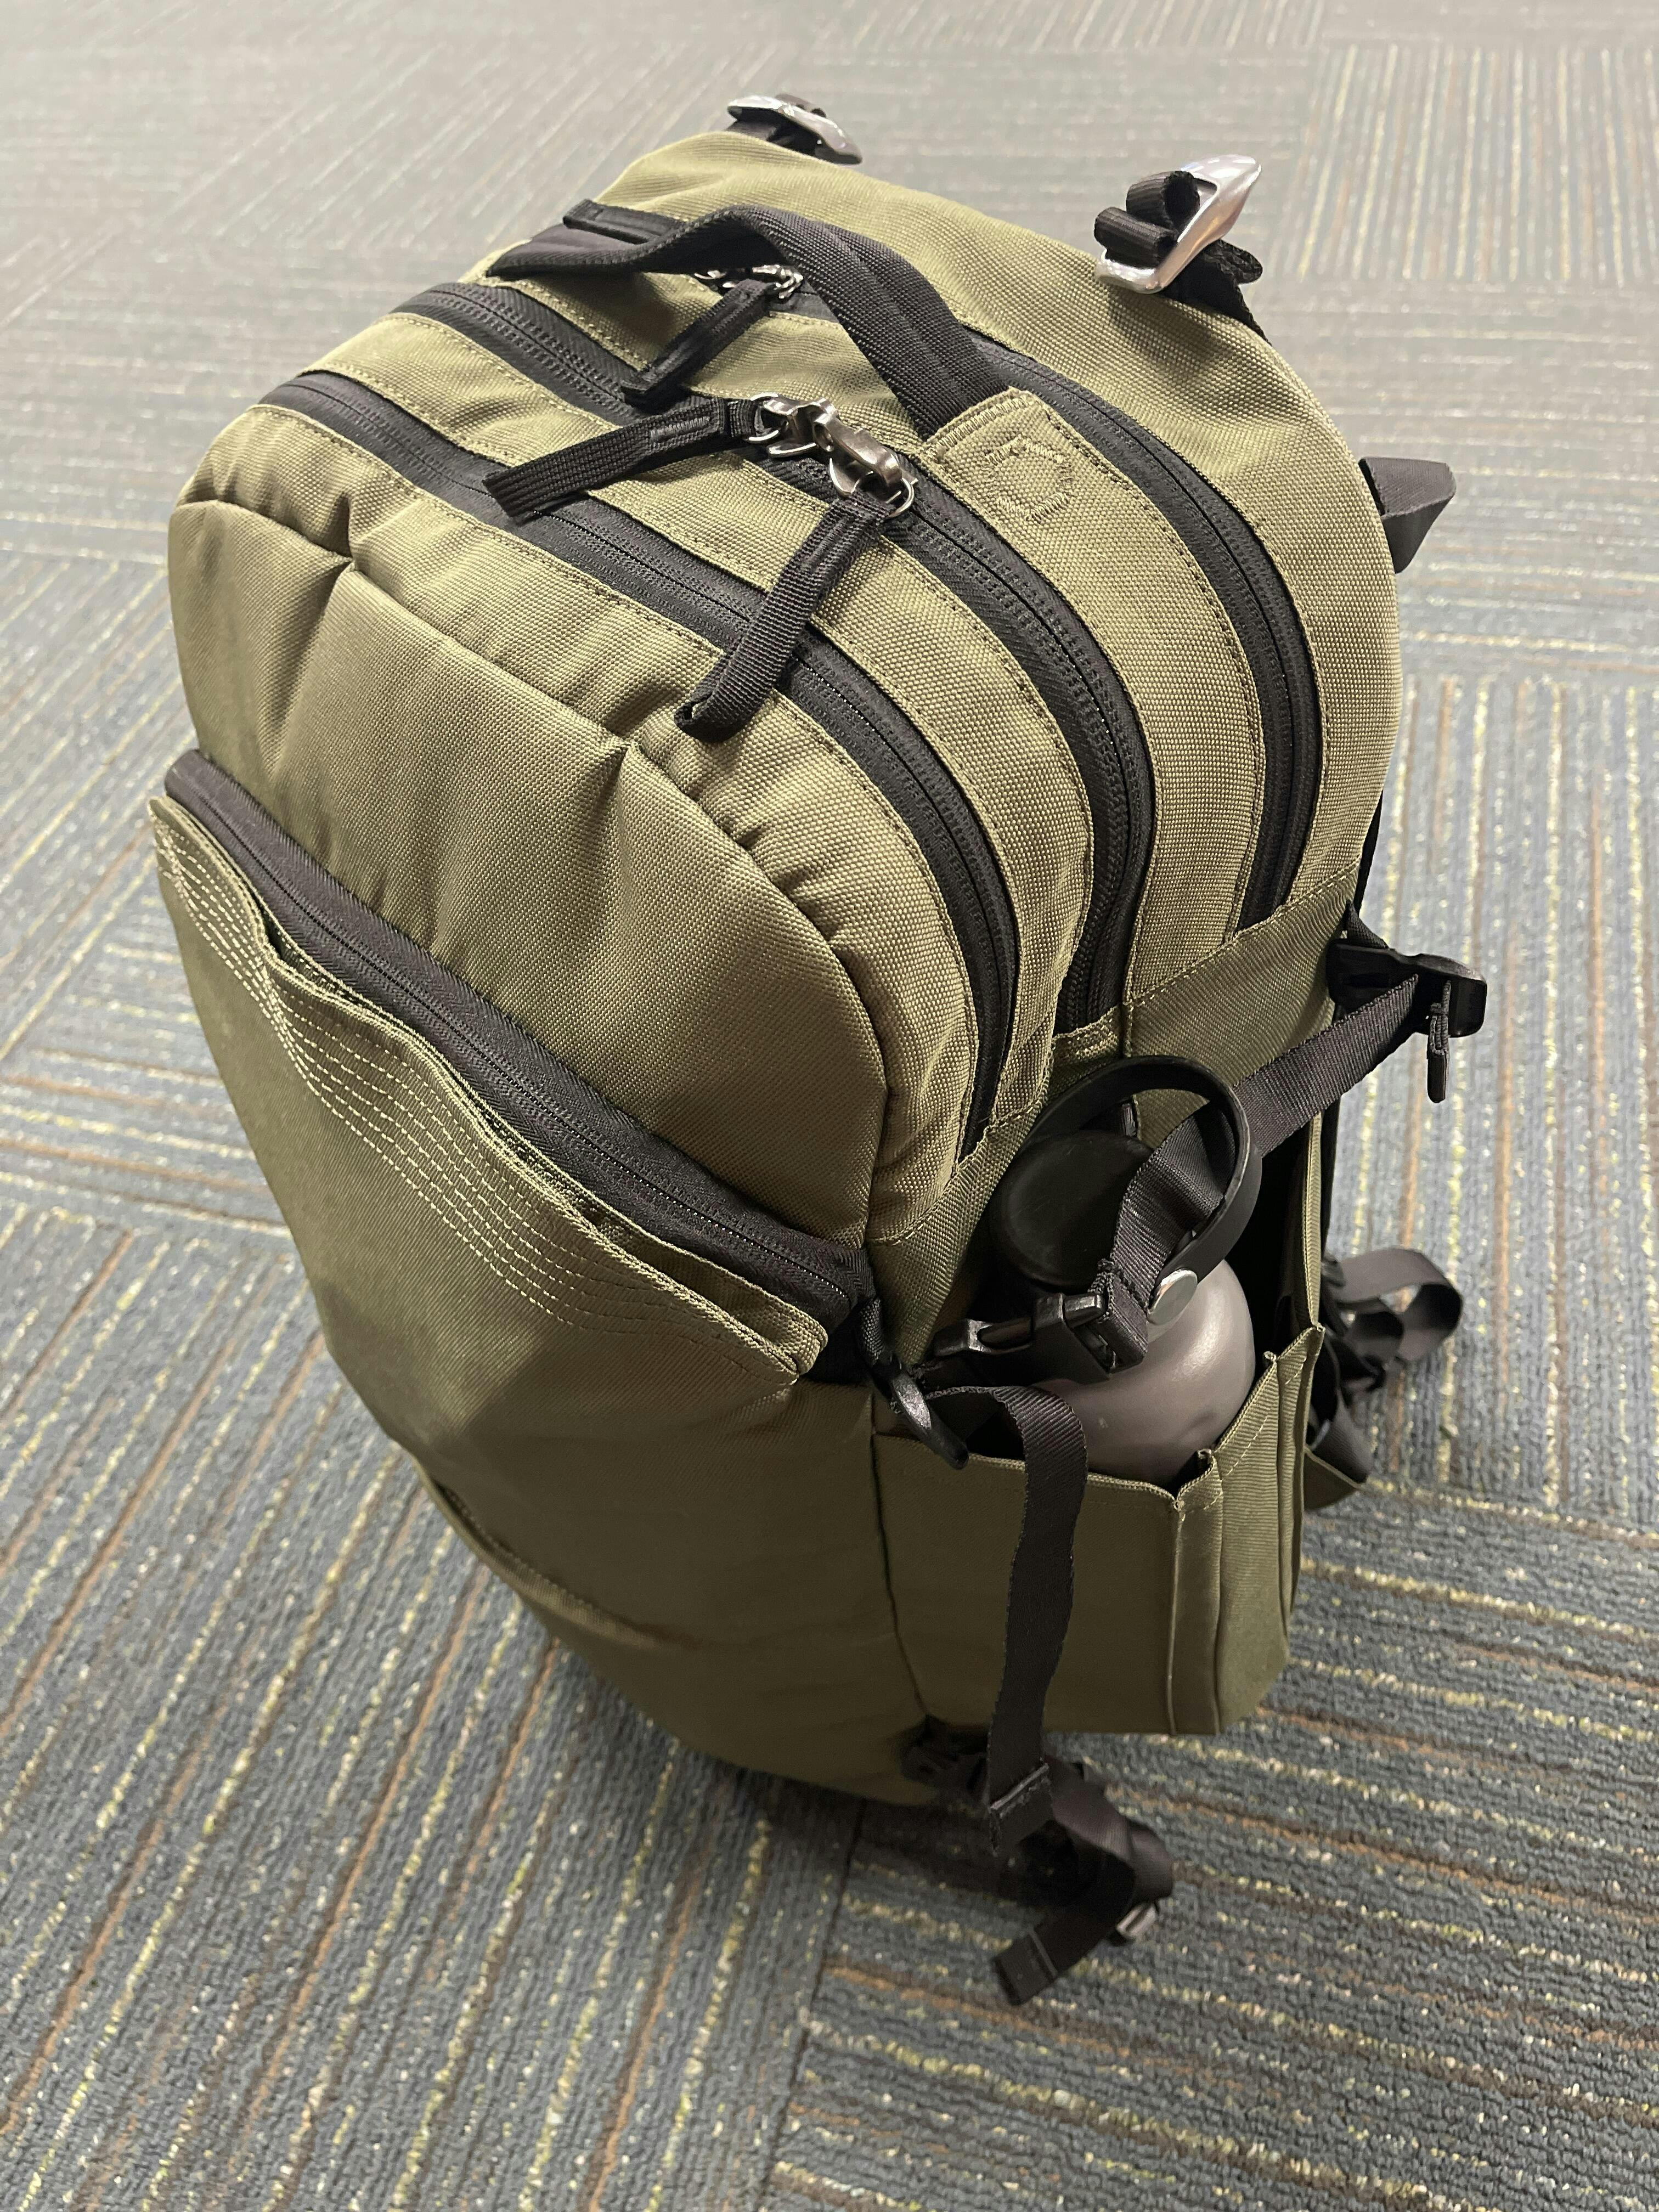 pakt travel backpack reddit